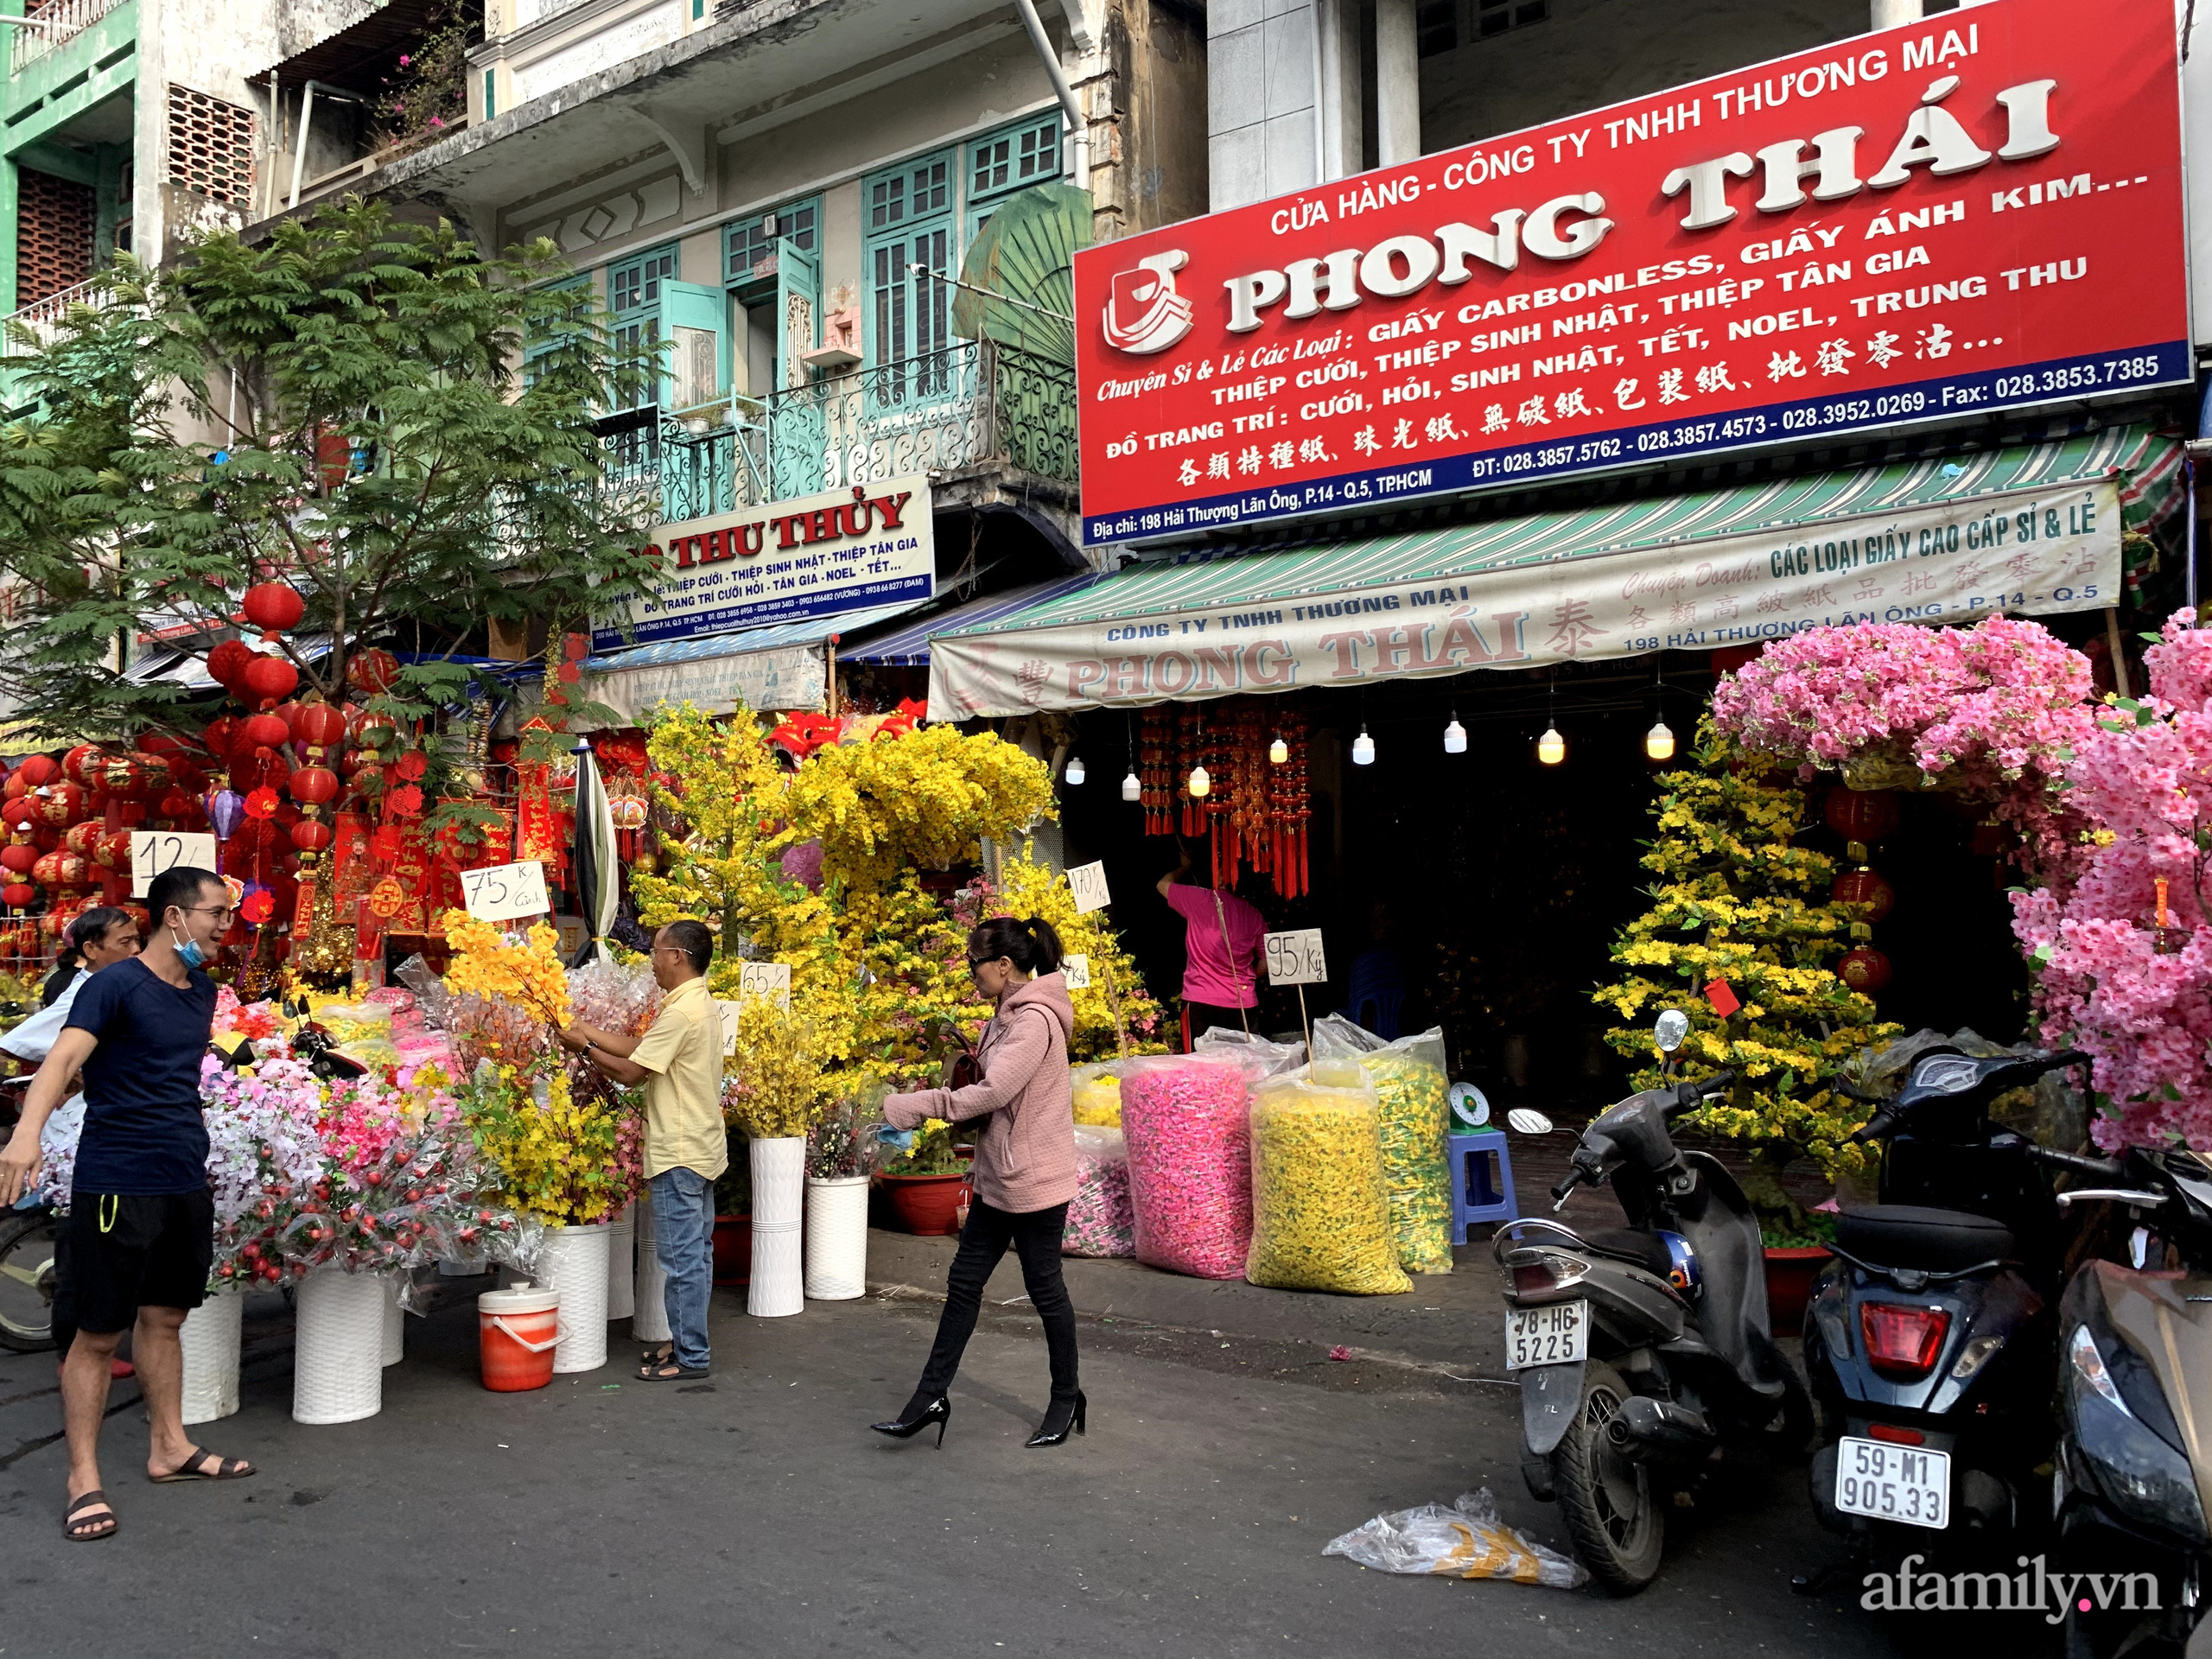 Sài Gòn: Rực rỡ sắc xuân ở phố Hải Thượng Lãn Ông cận Tết Tân Sửu 2021